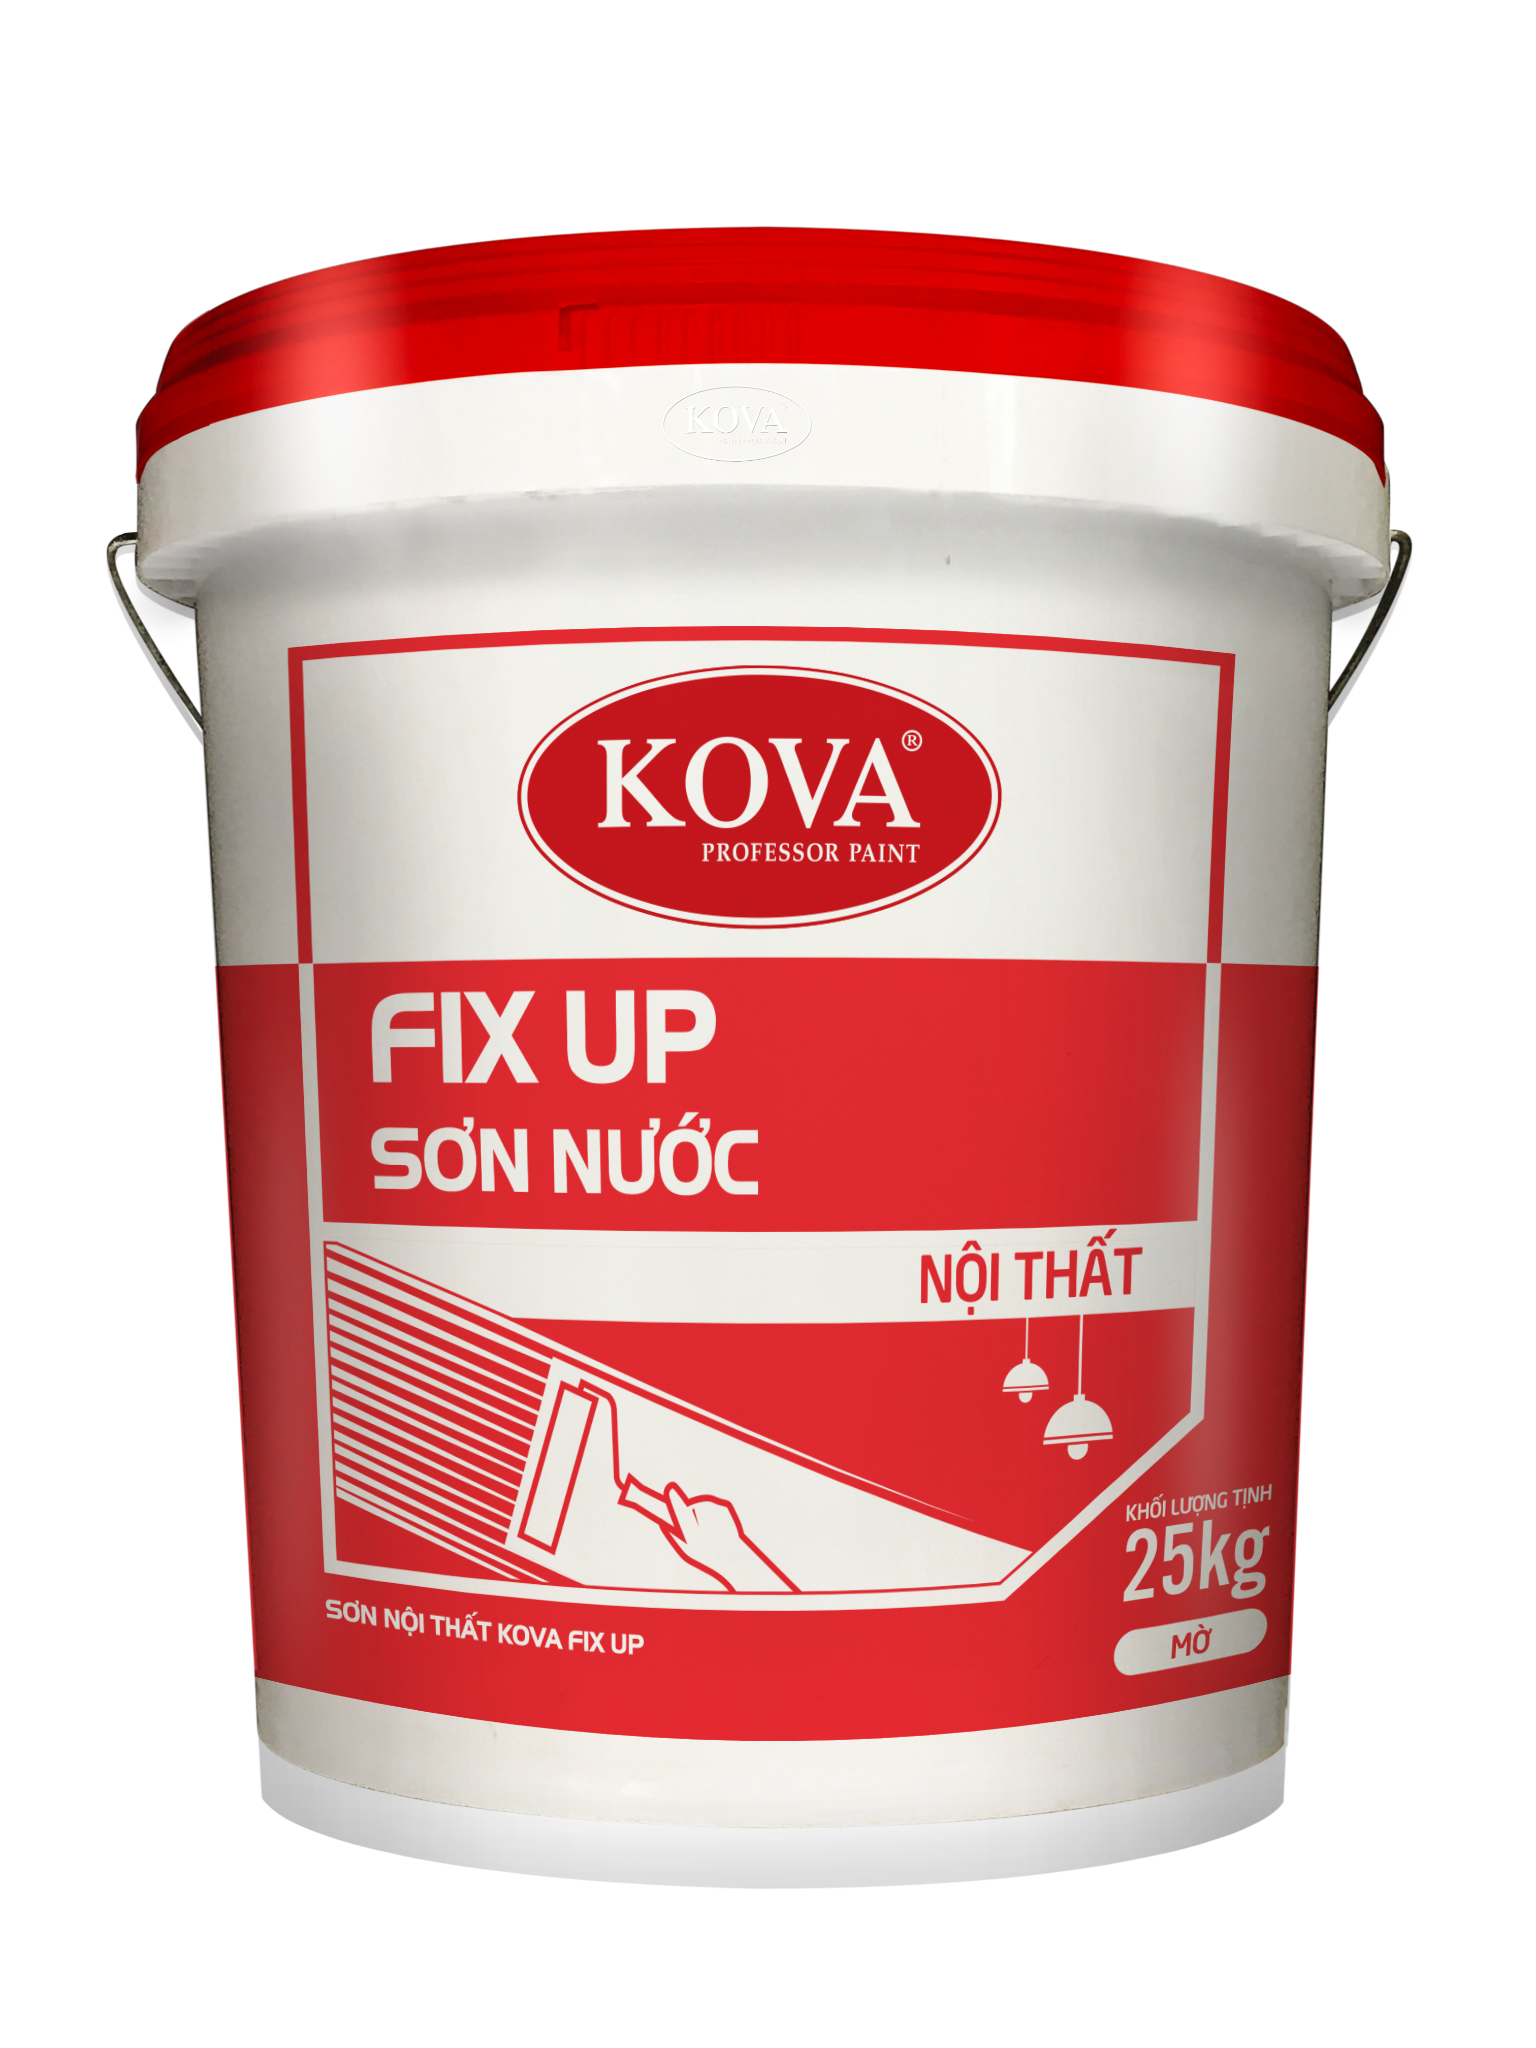 KOVA Fix Up - Sơn Nội Thất KOVA – Hóa chất xây dựng